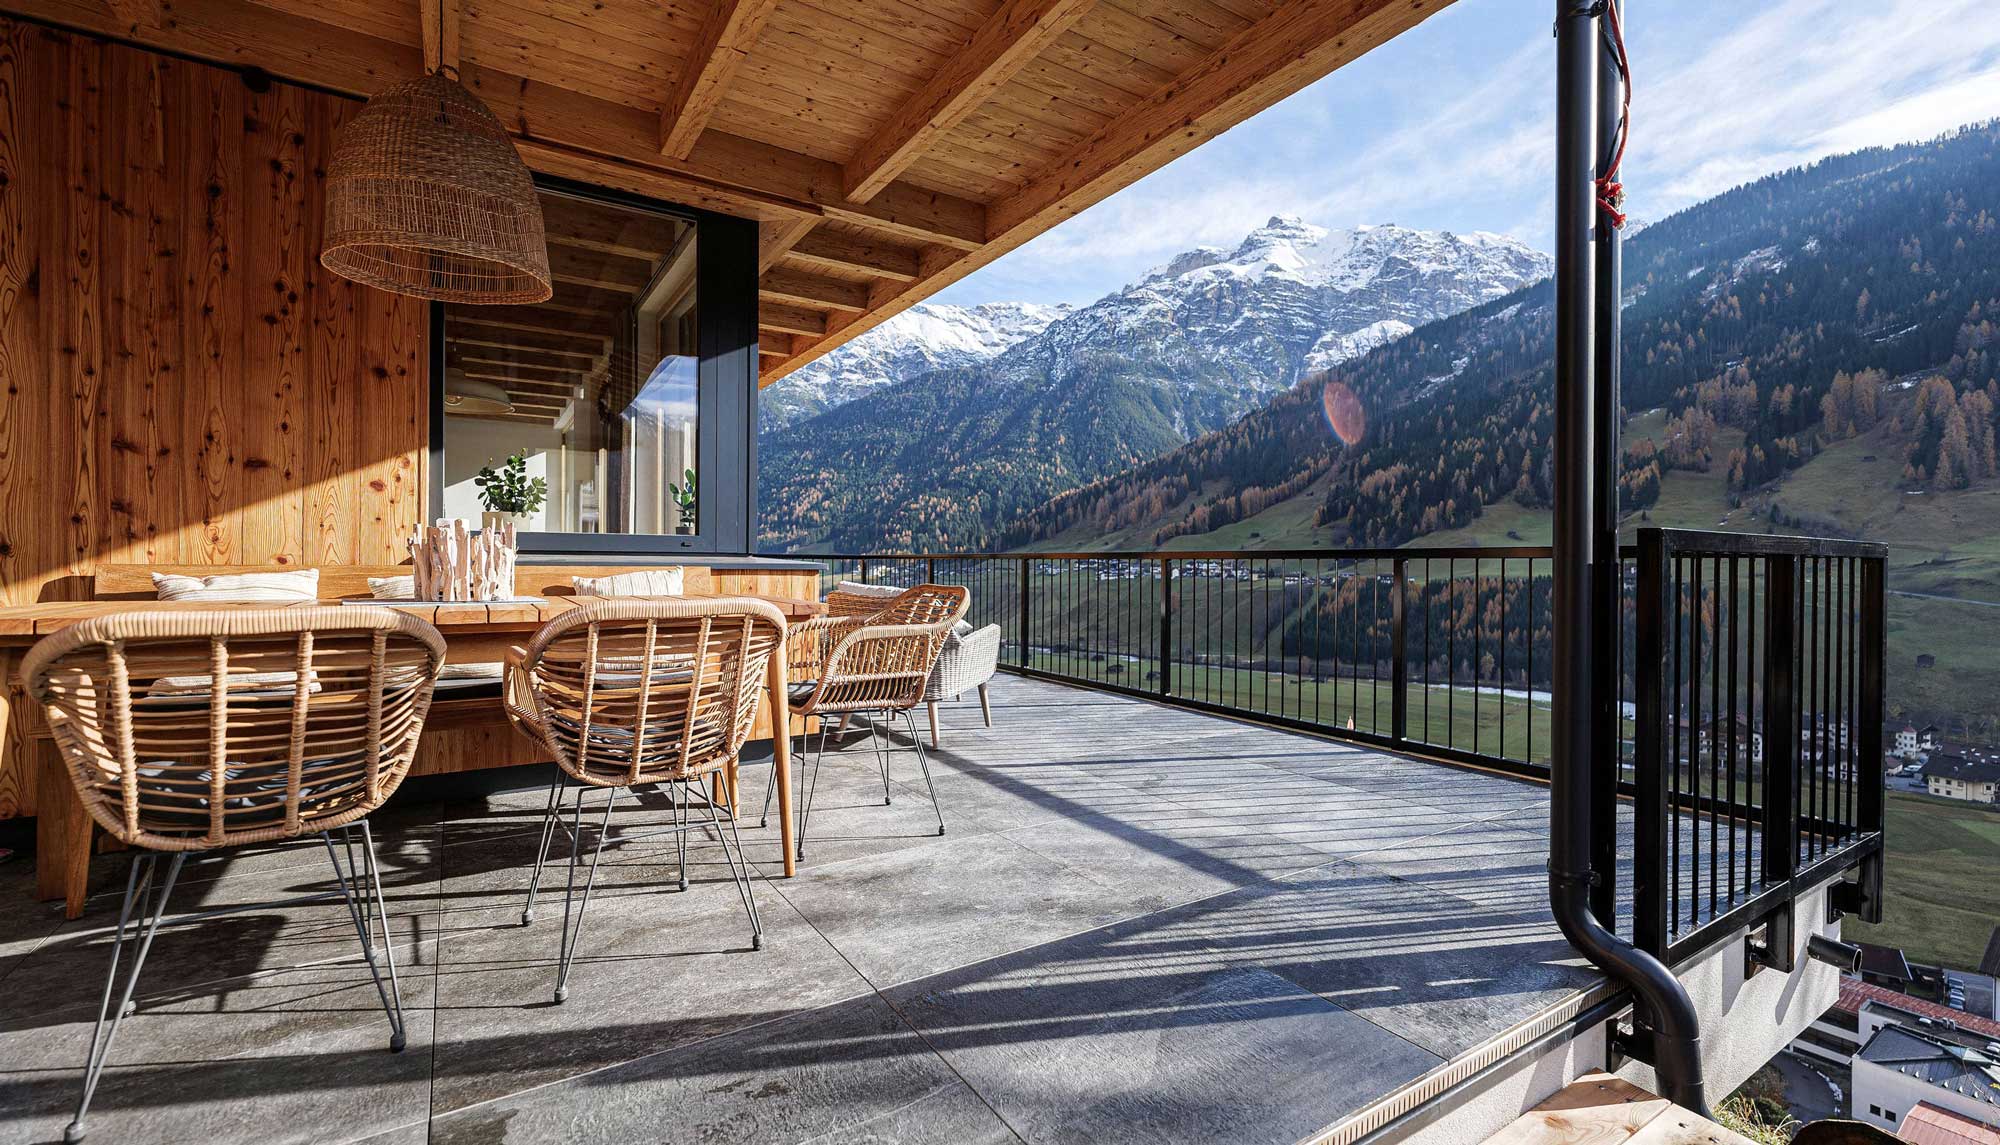 Terrasse mit Ausblick auf Berge | Doppelhaus Innsbruck Land | Architektenhäuser